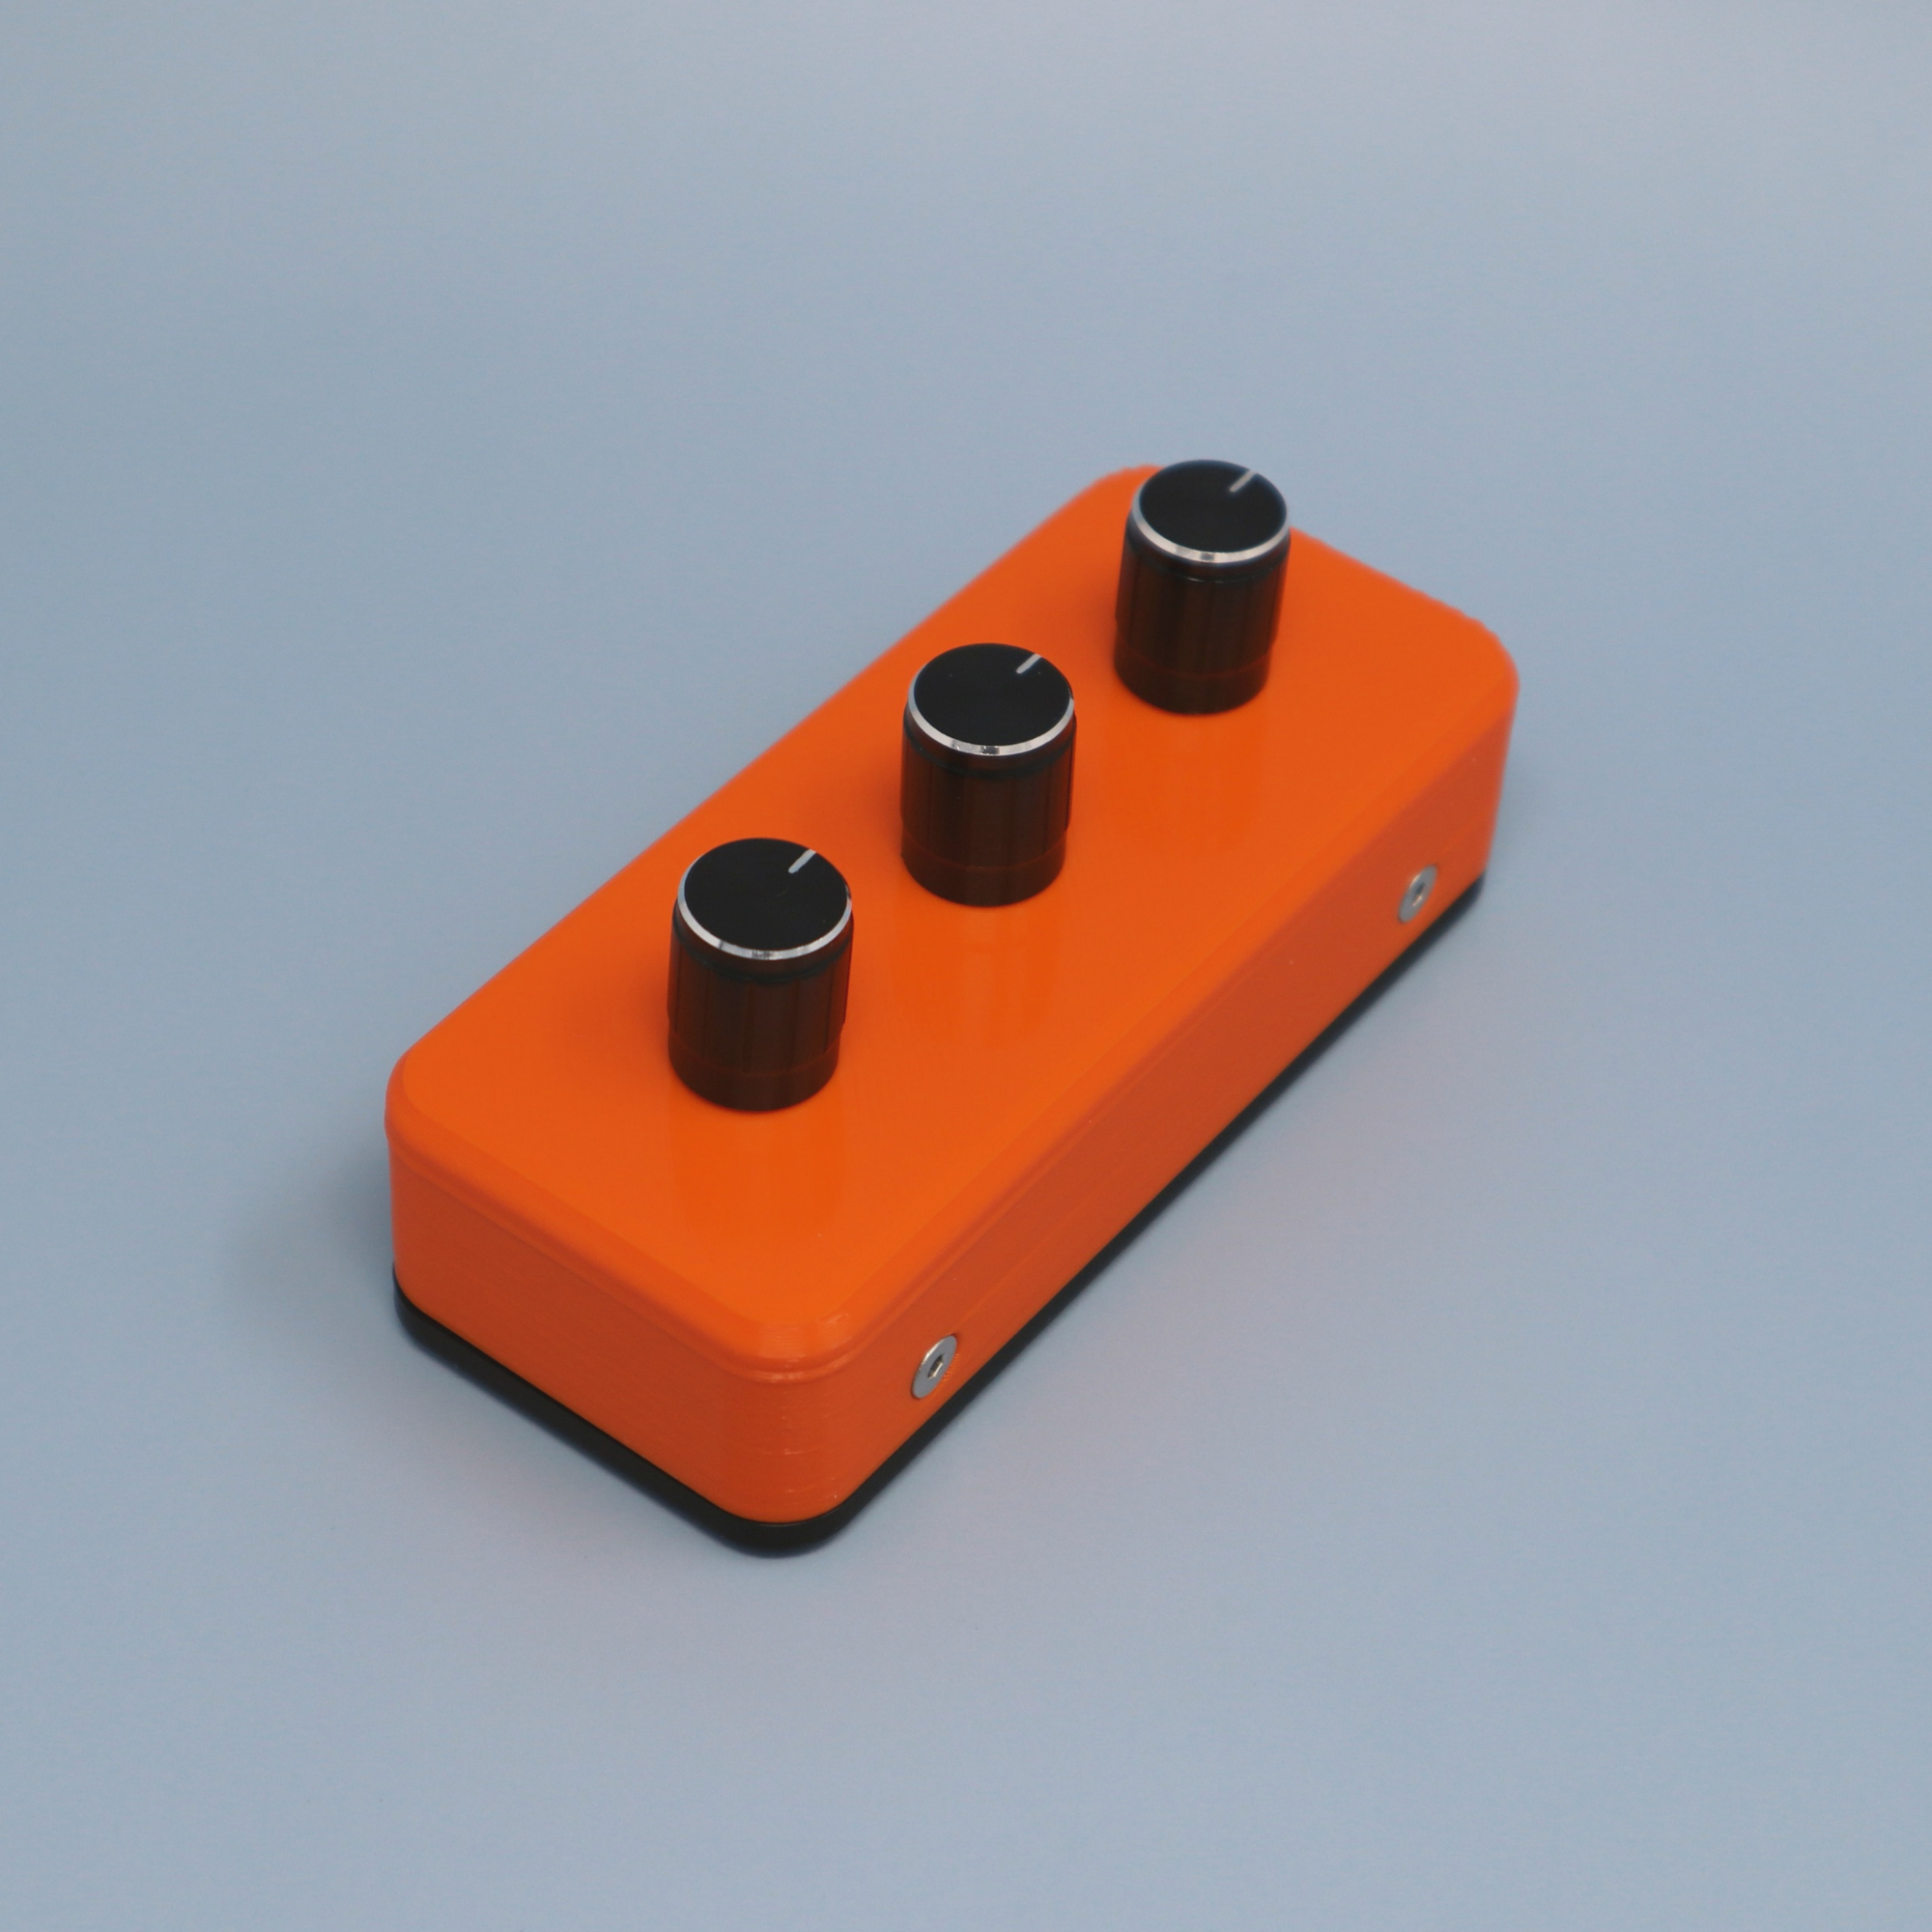 Sparrow 5x5 MIDI controller